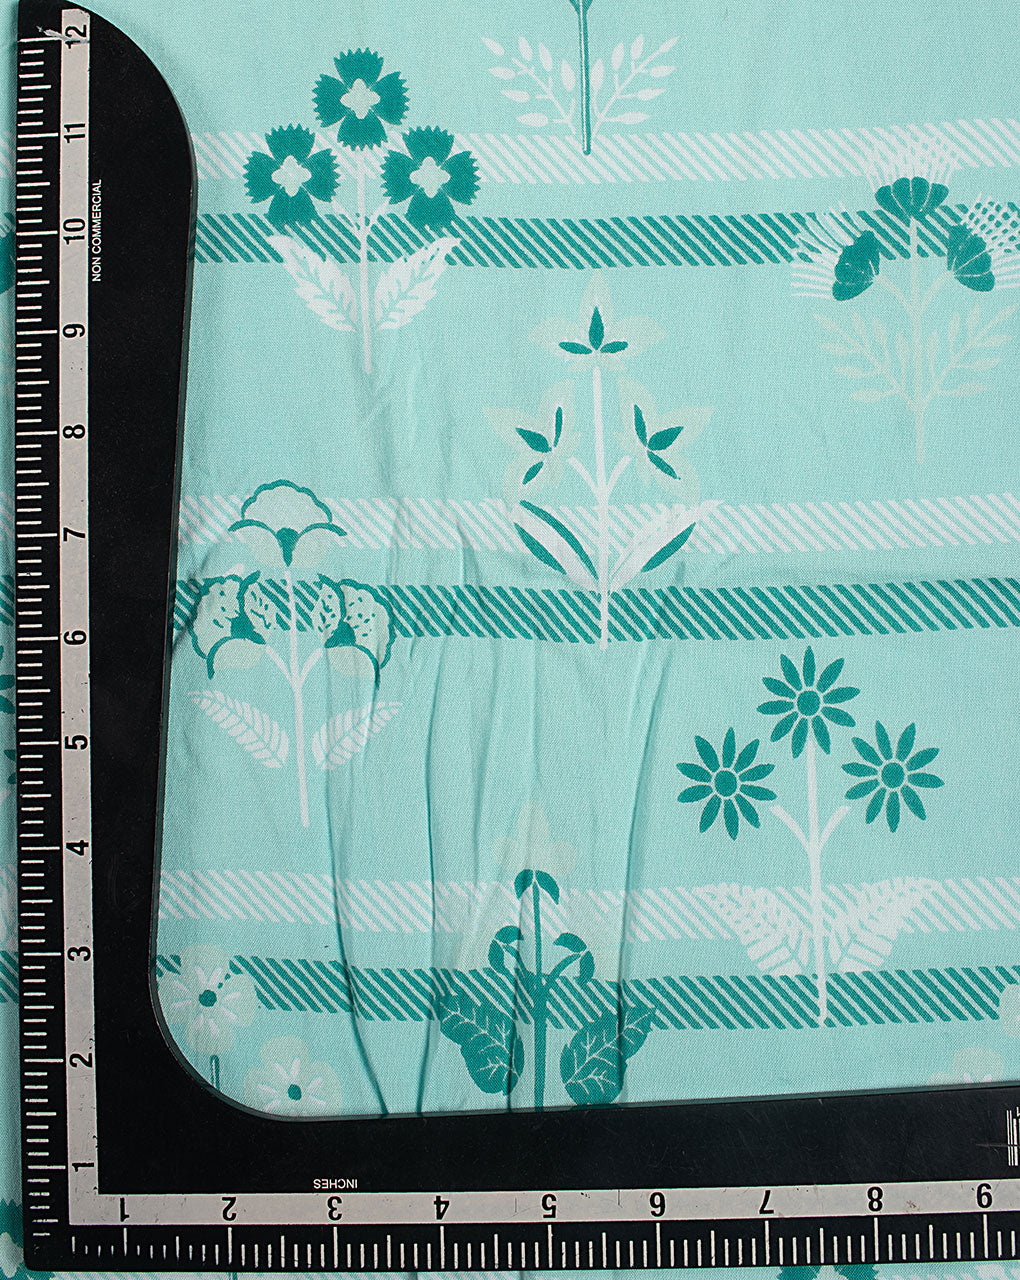 Screen Print Rayon Fabric